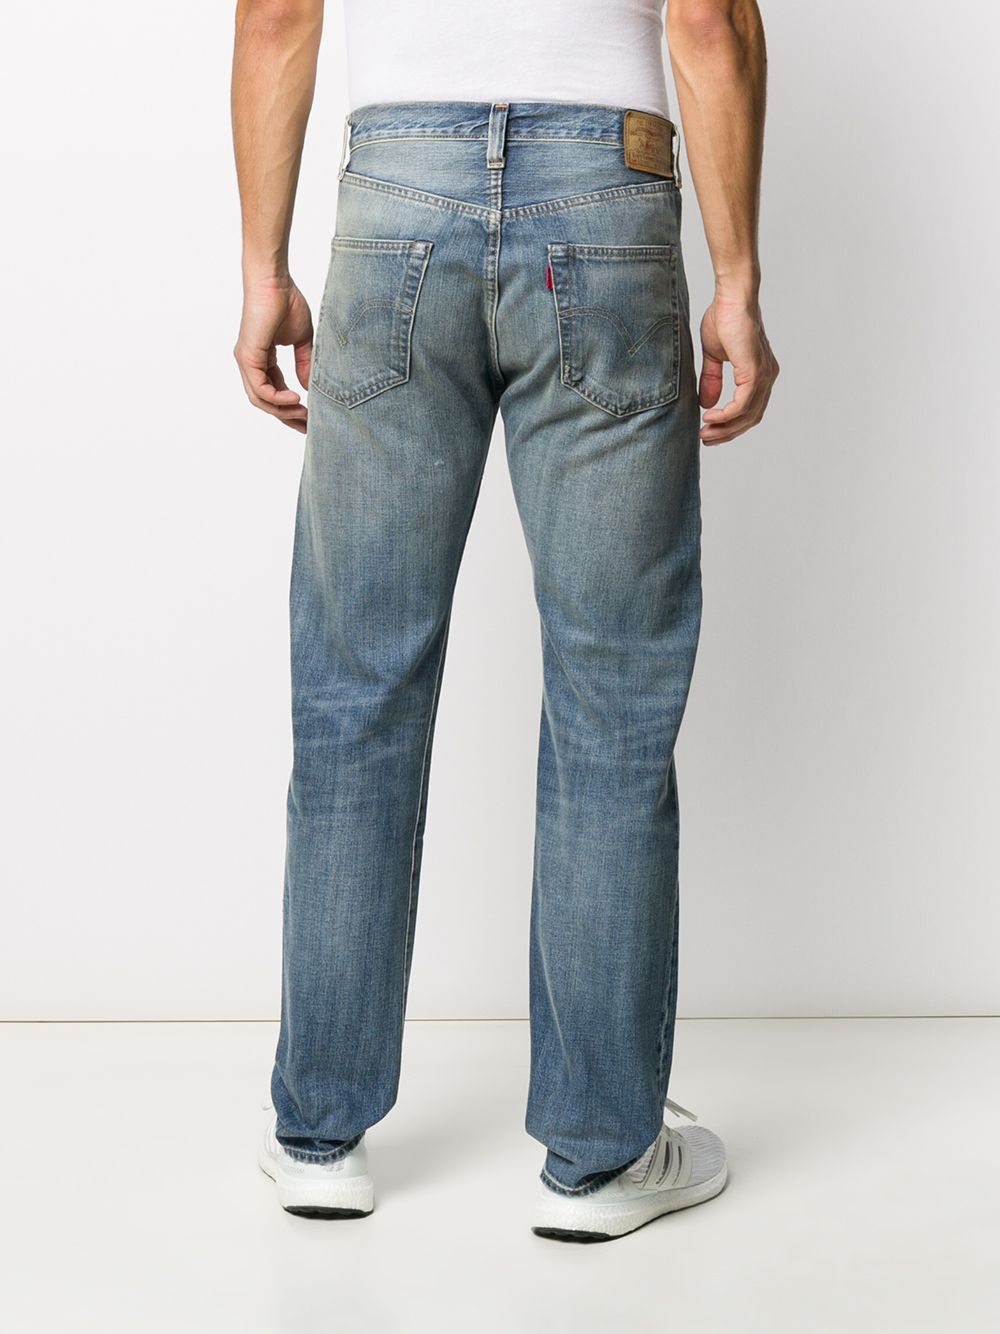 фото Levi's vintage clothing прямые джинсы 501 1947-го года